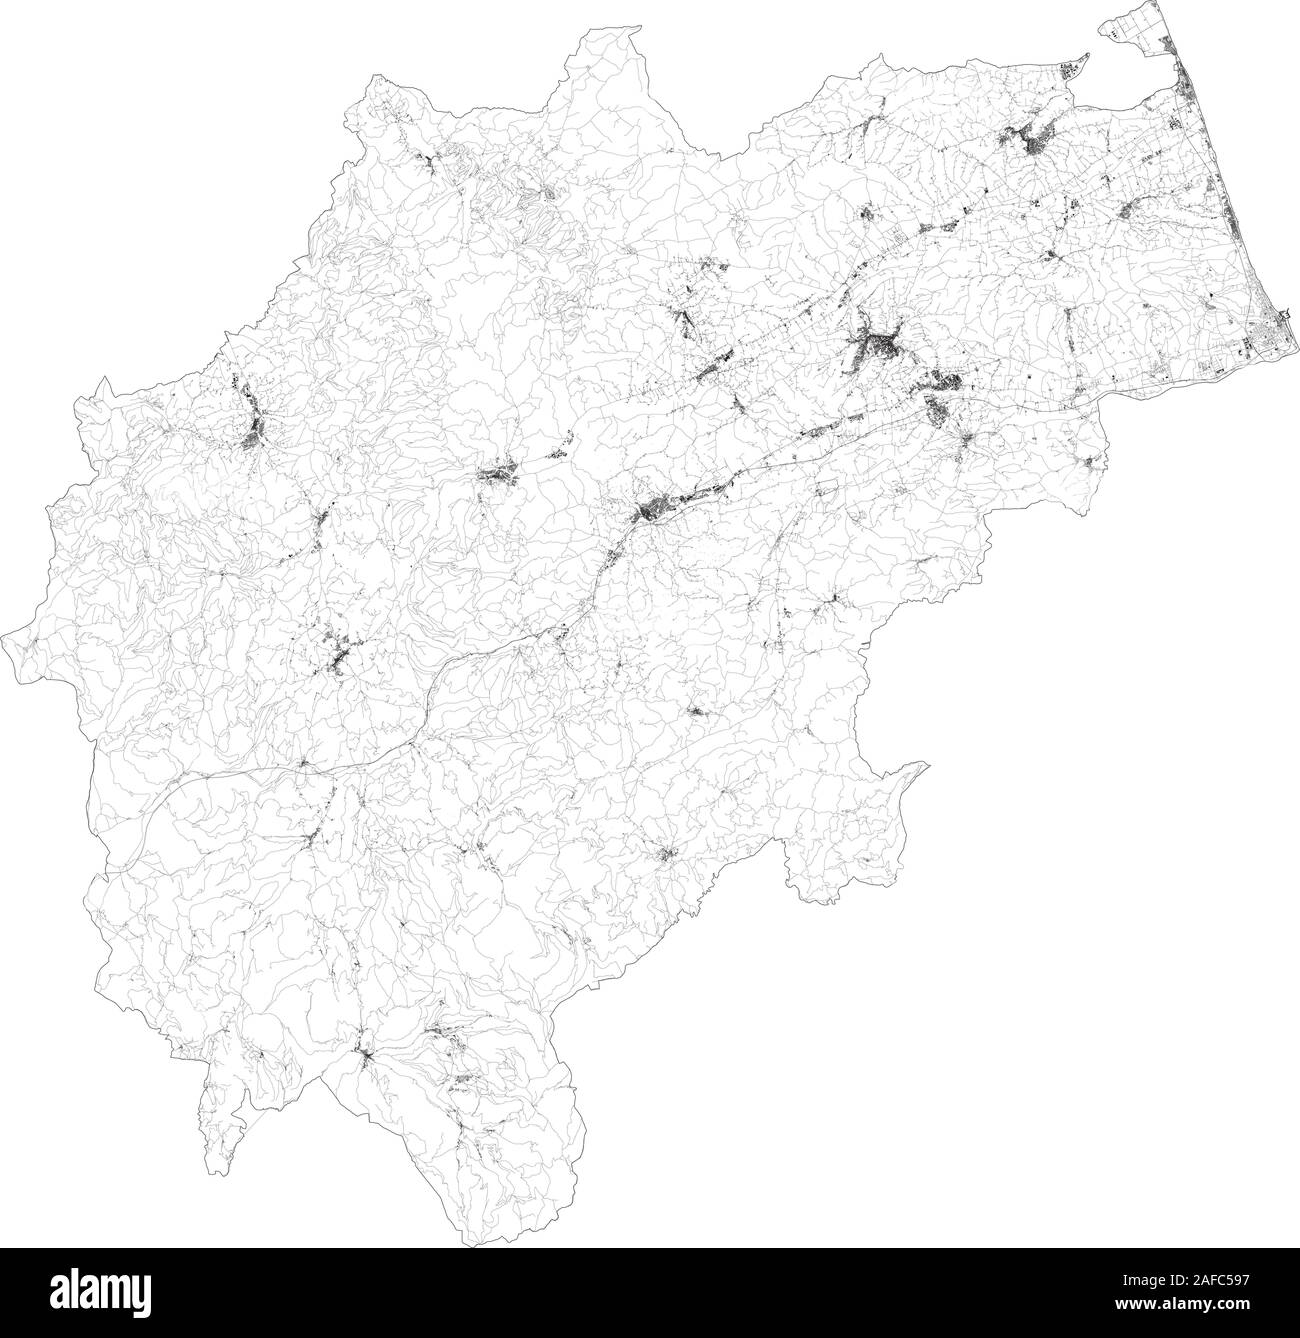 Mappa satellitare della provincia di Macerata, città e strade, edifici e strade di collegamento delle aree circostanti. La regione Marche, Italia. Mappa stradale Illustrazione Vettoriale